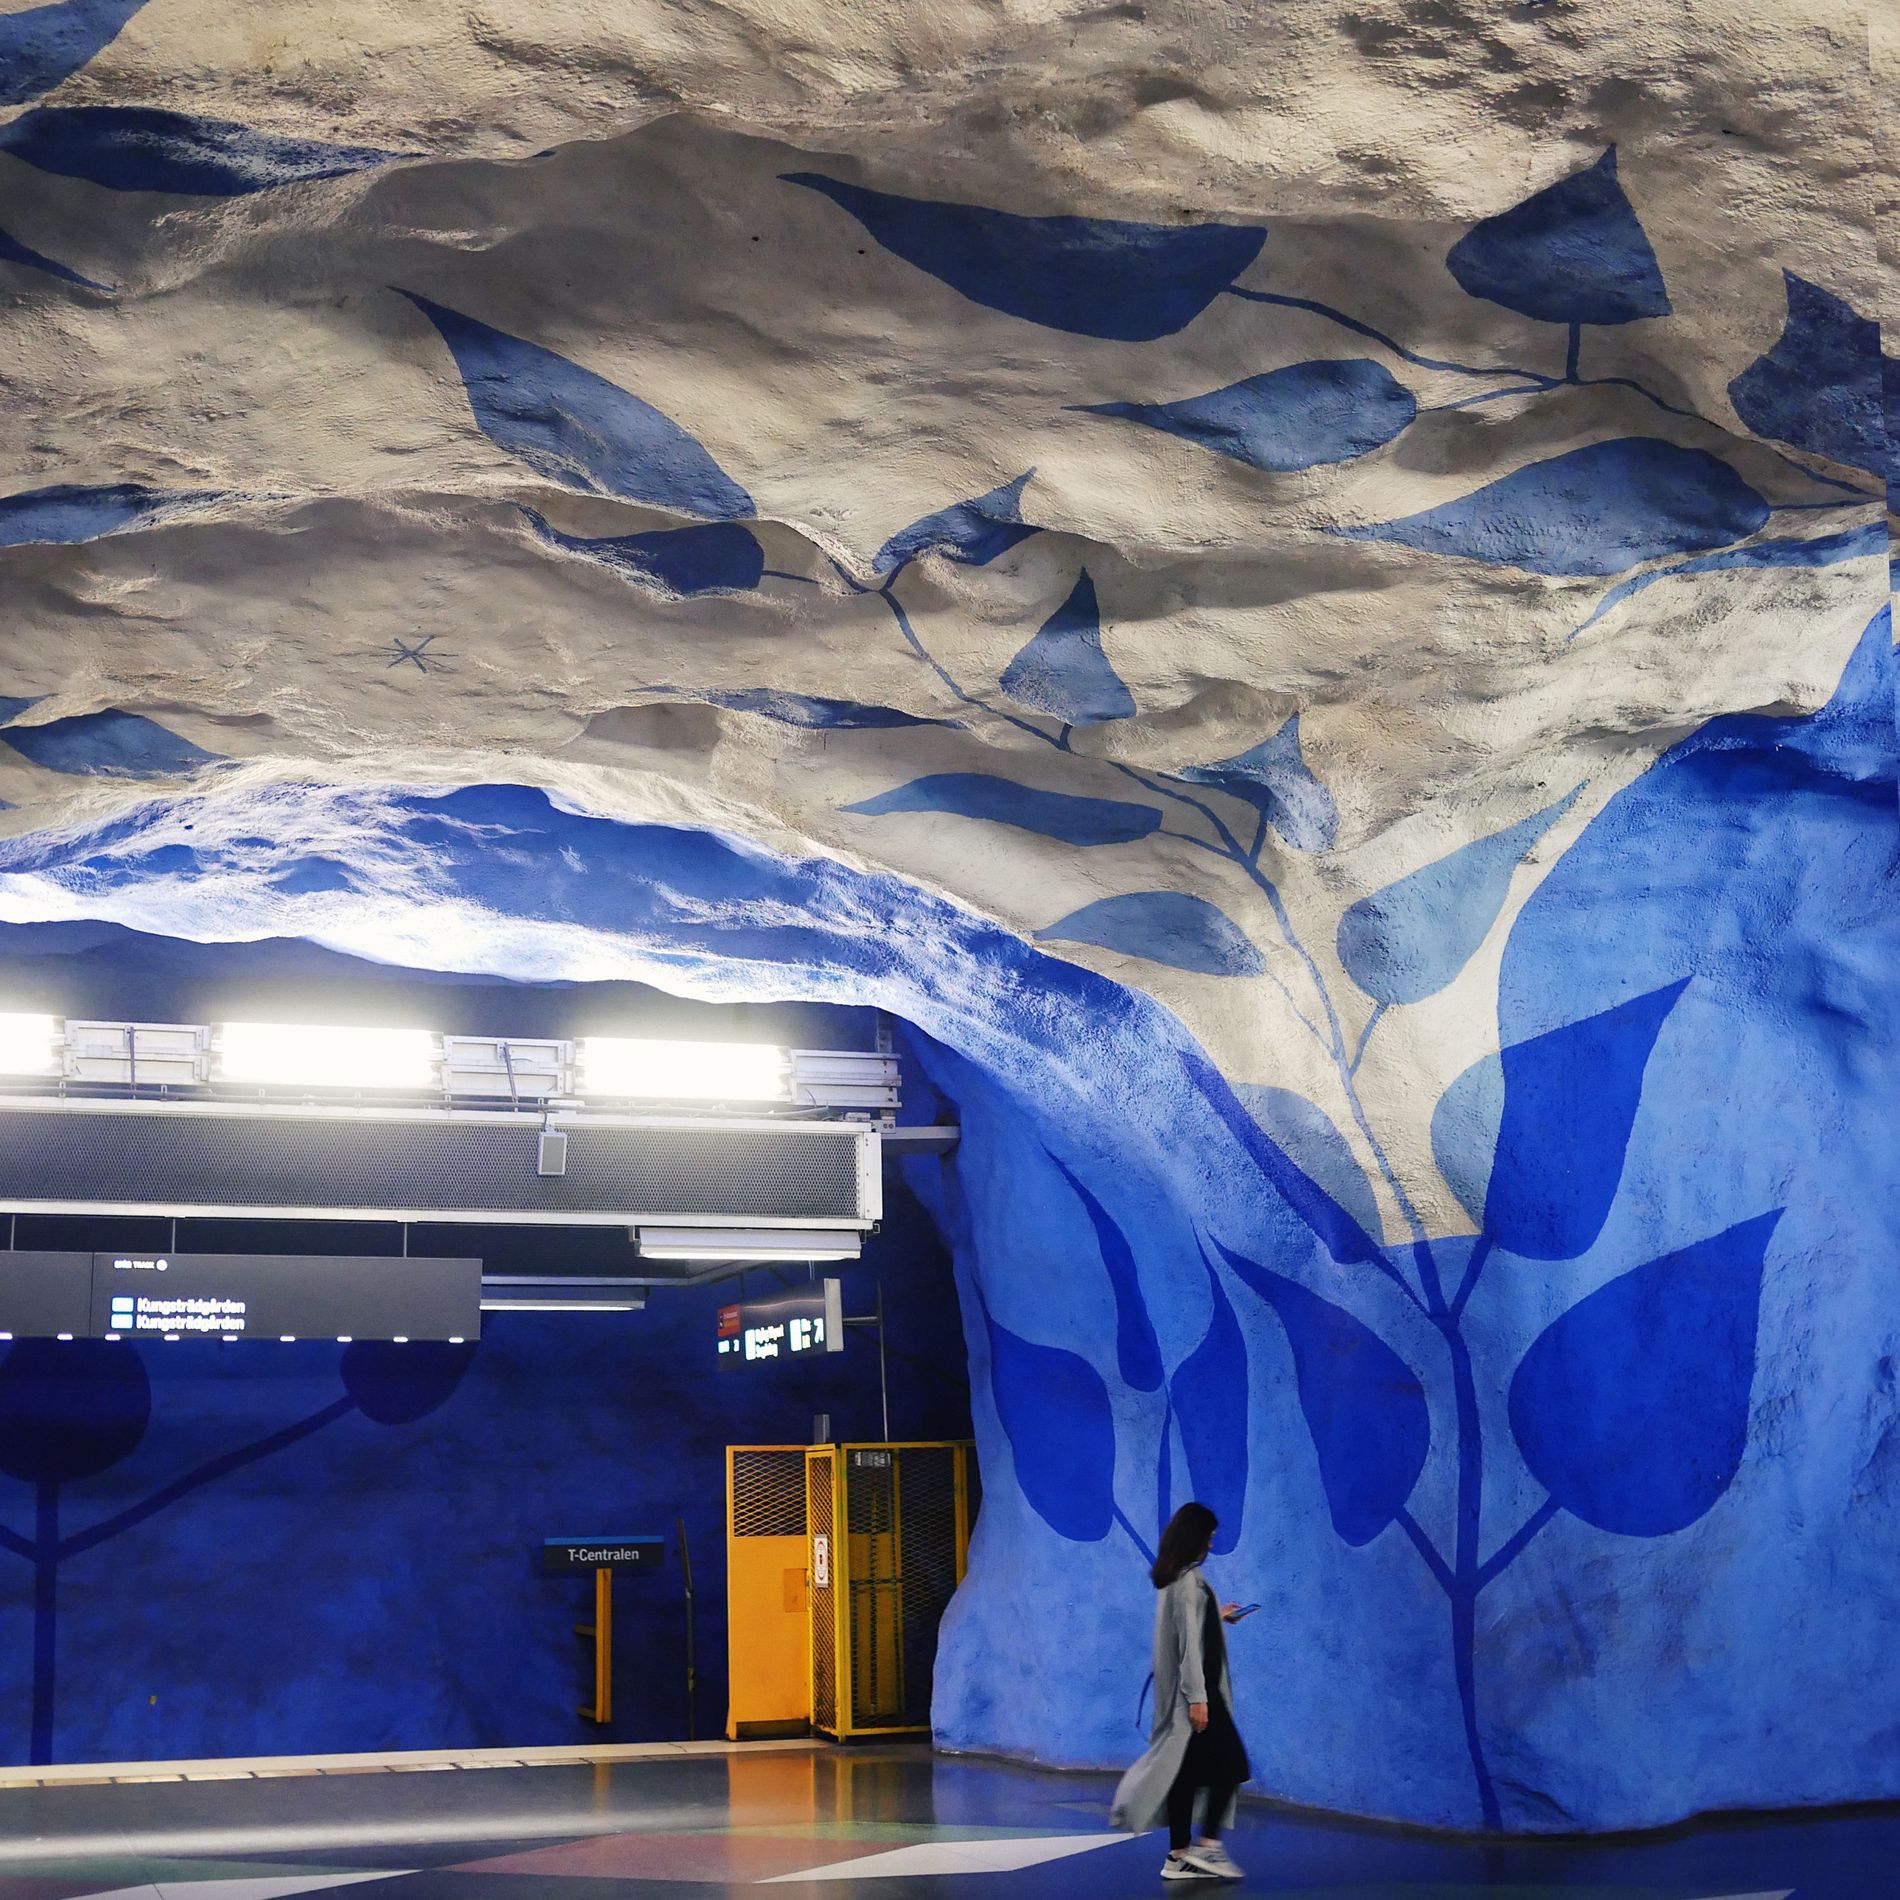 stockholm subway station metro sweden instagram